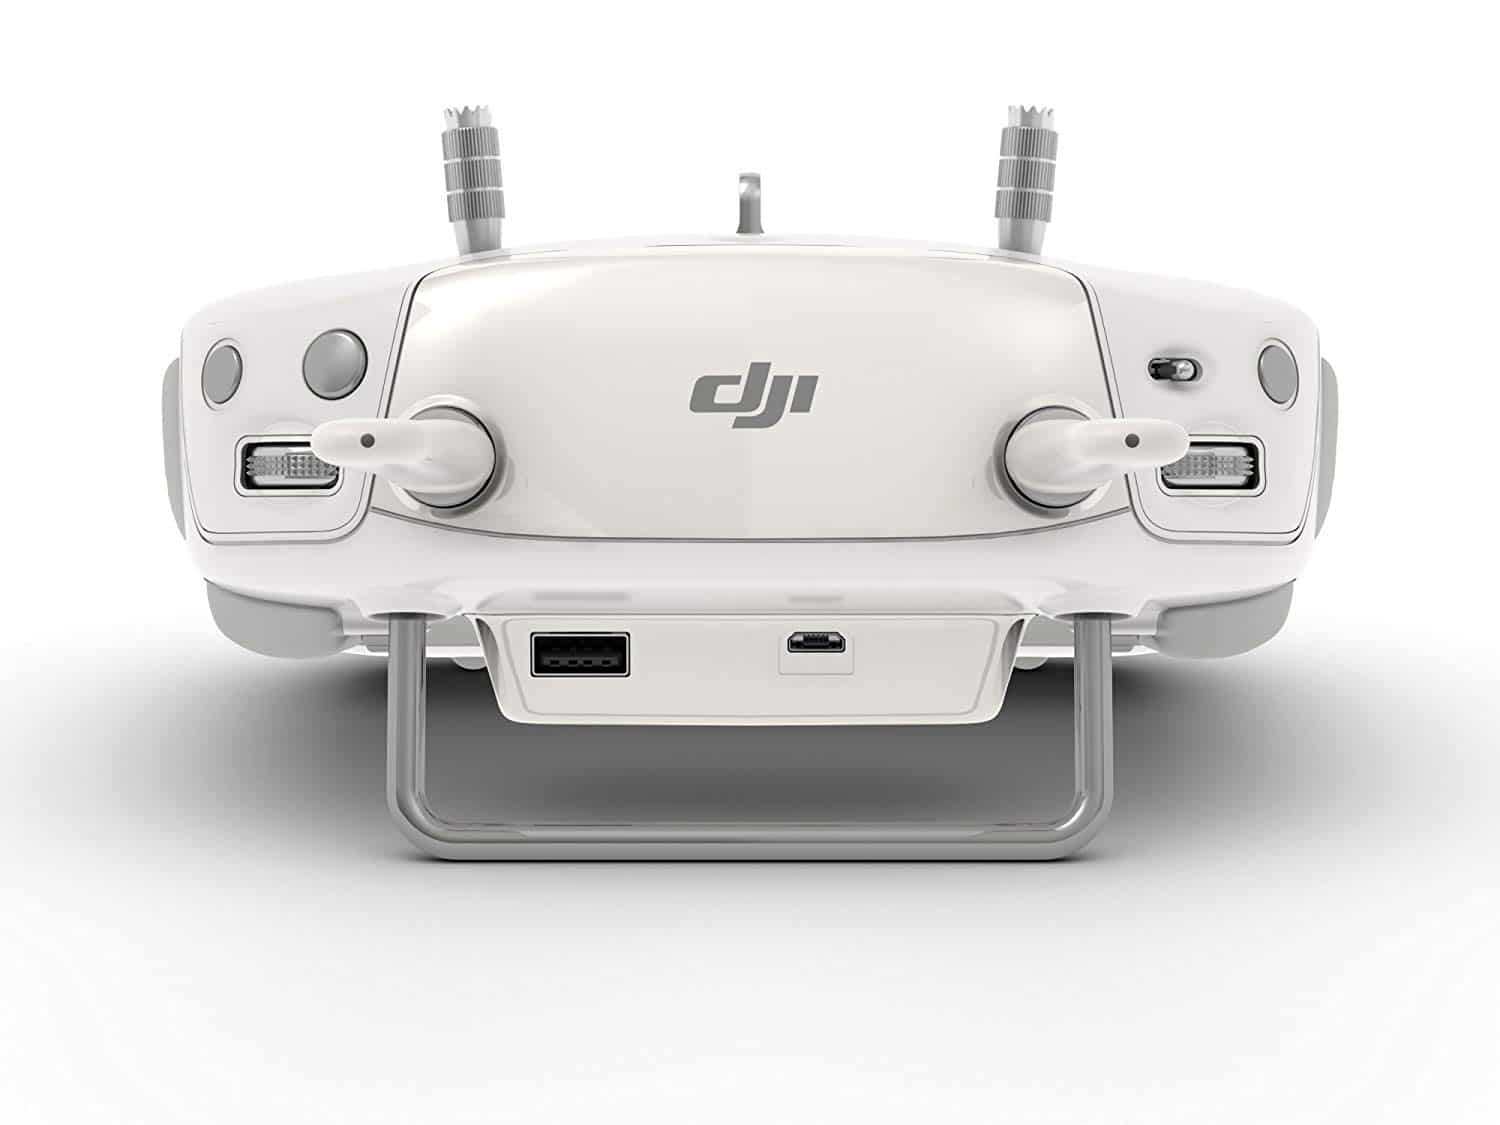 DJI Phantom 3 Pro Quadcopter